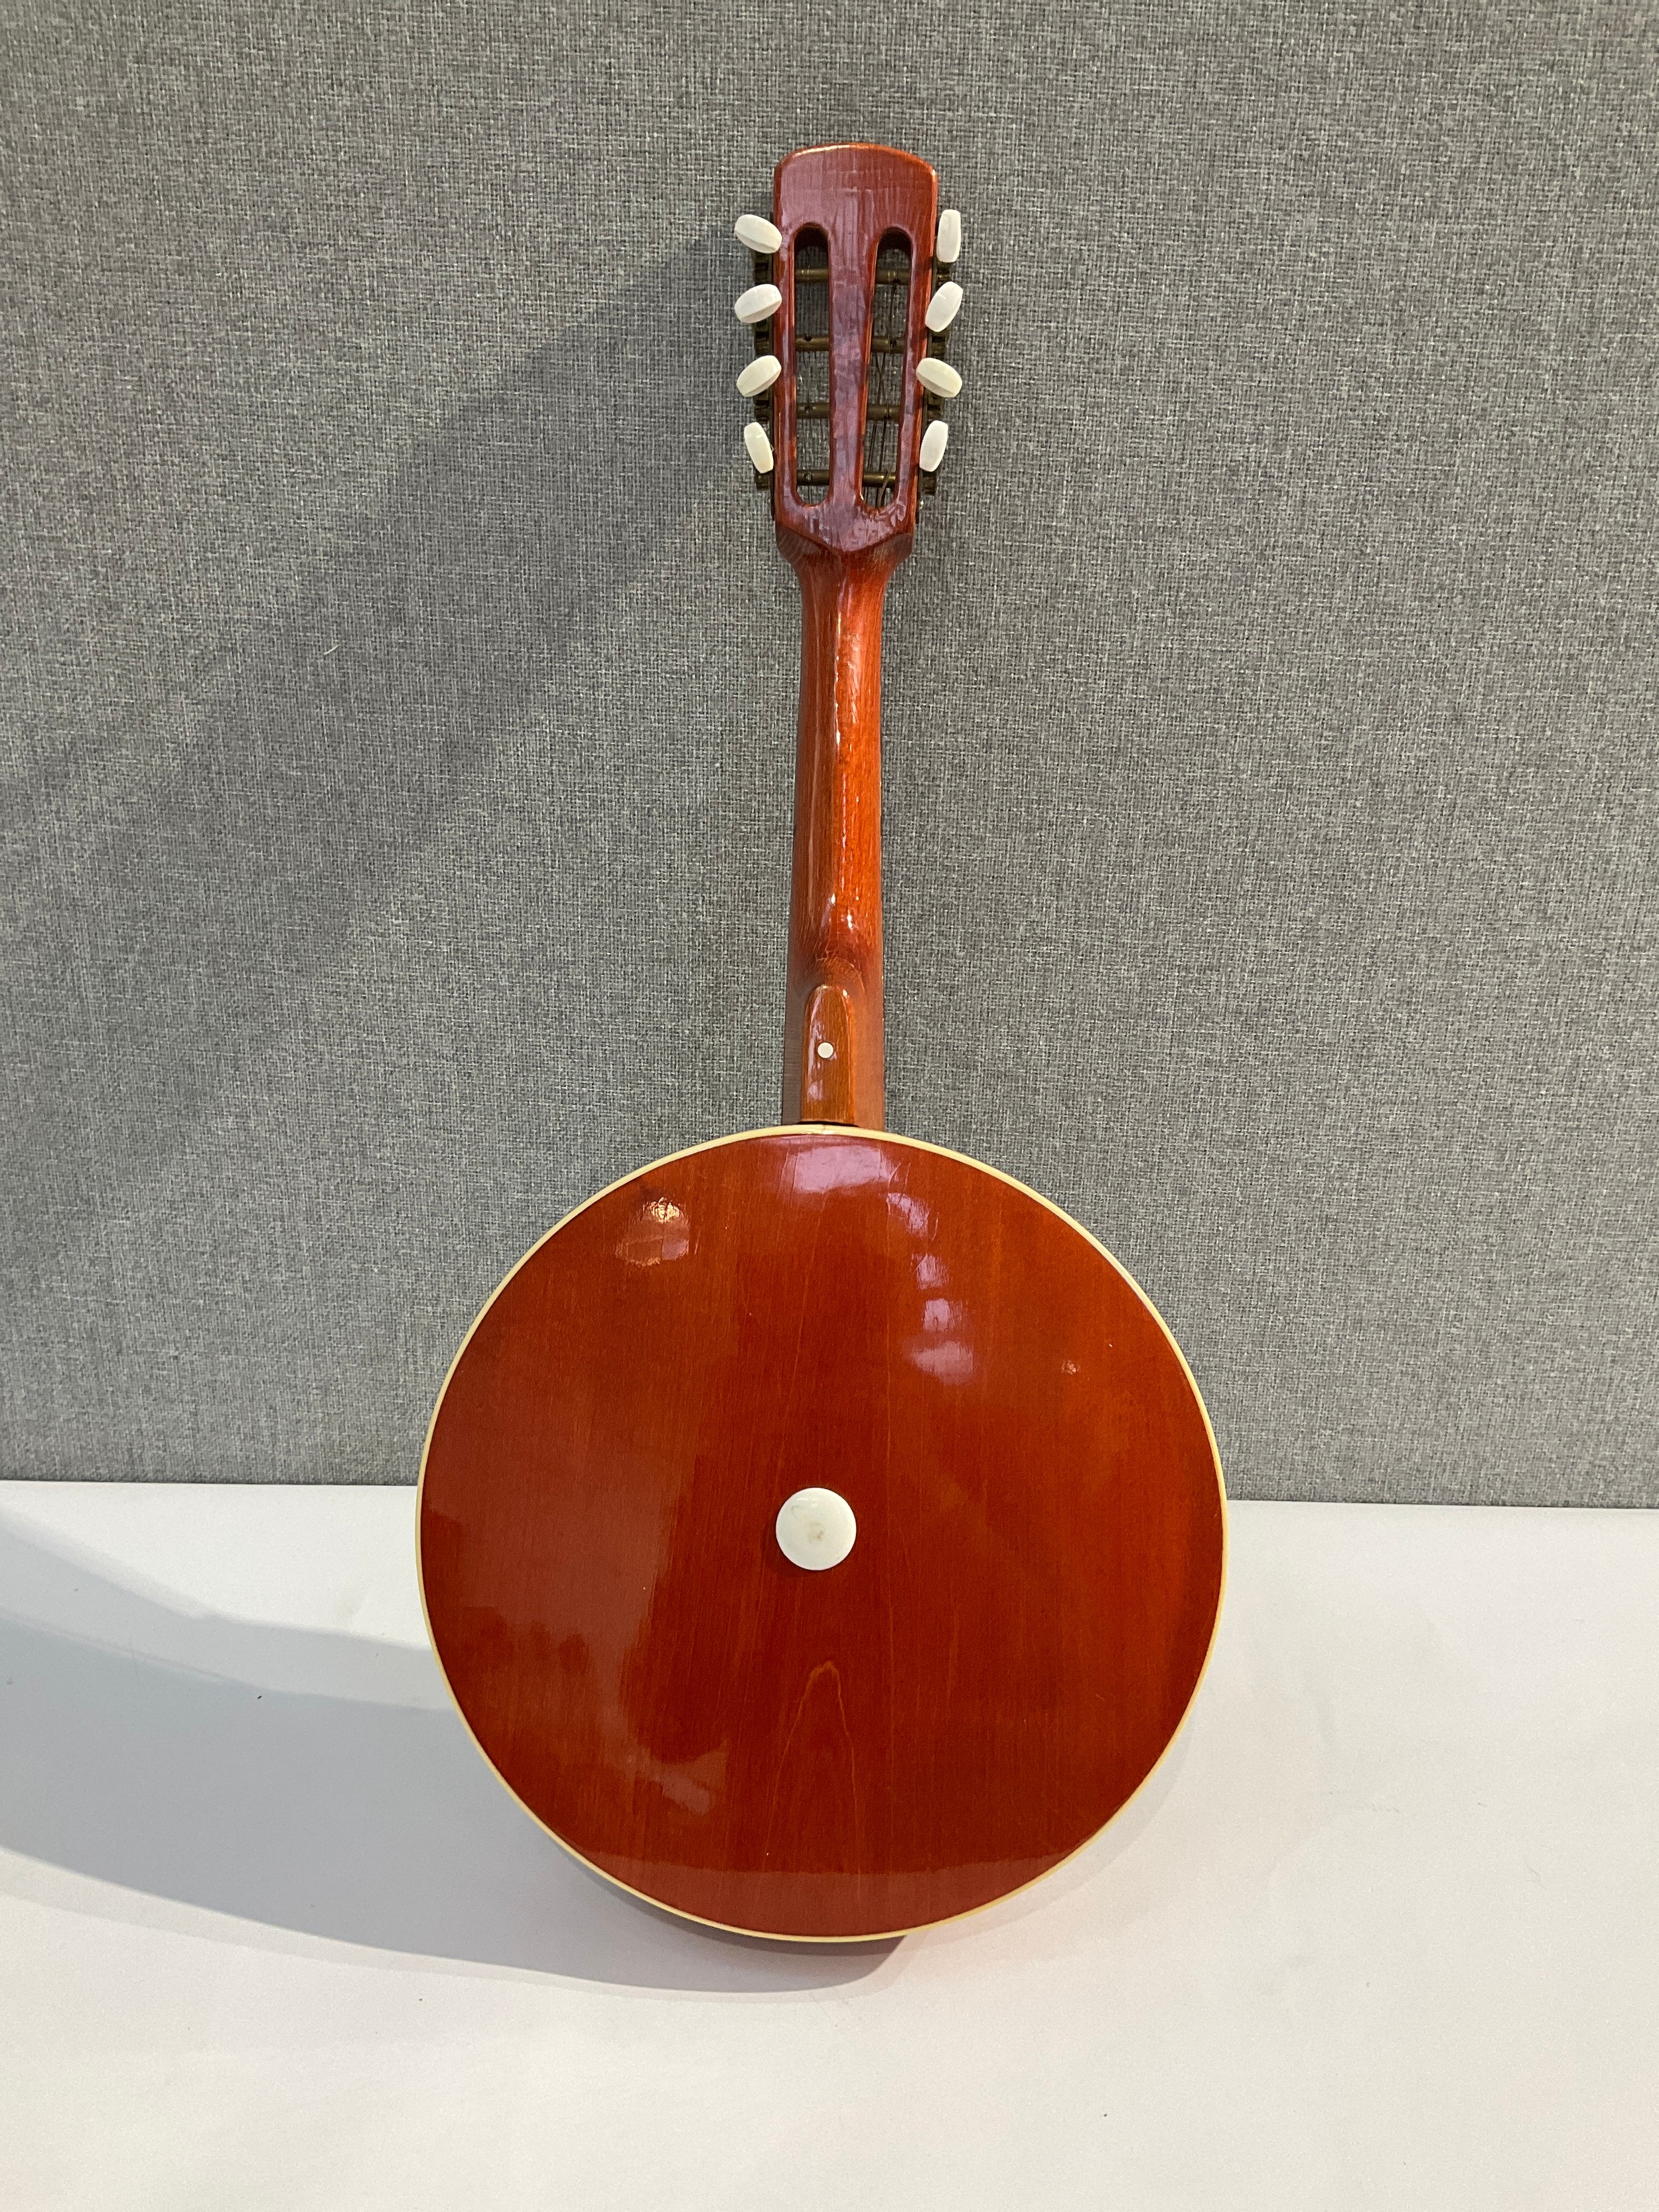 A Musima banjo mandolin (banjolin) with closed back - Image 2 of 2